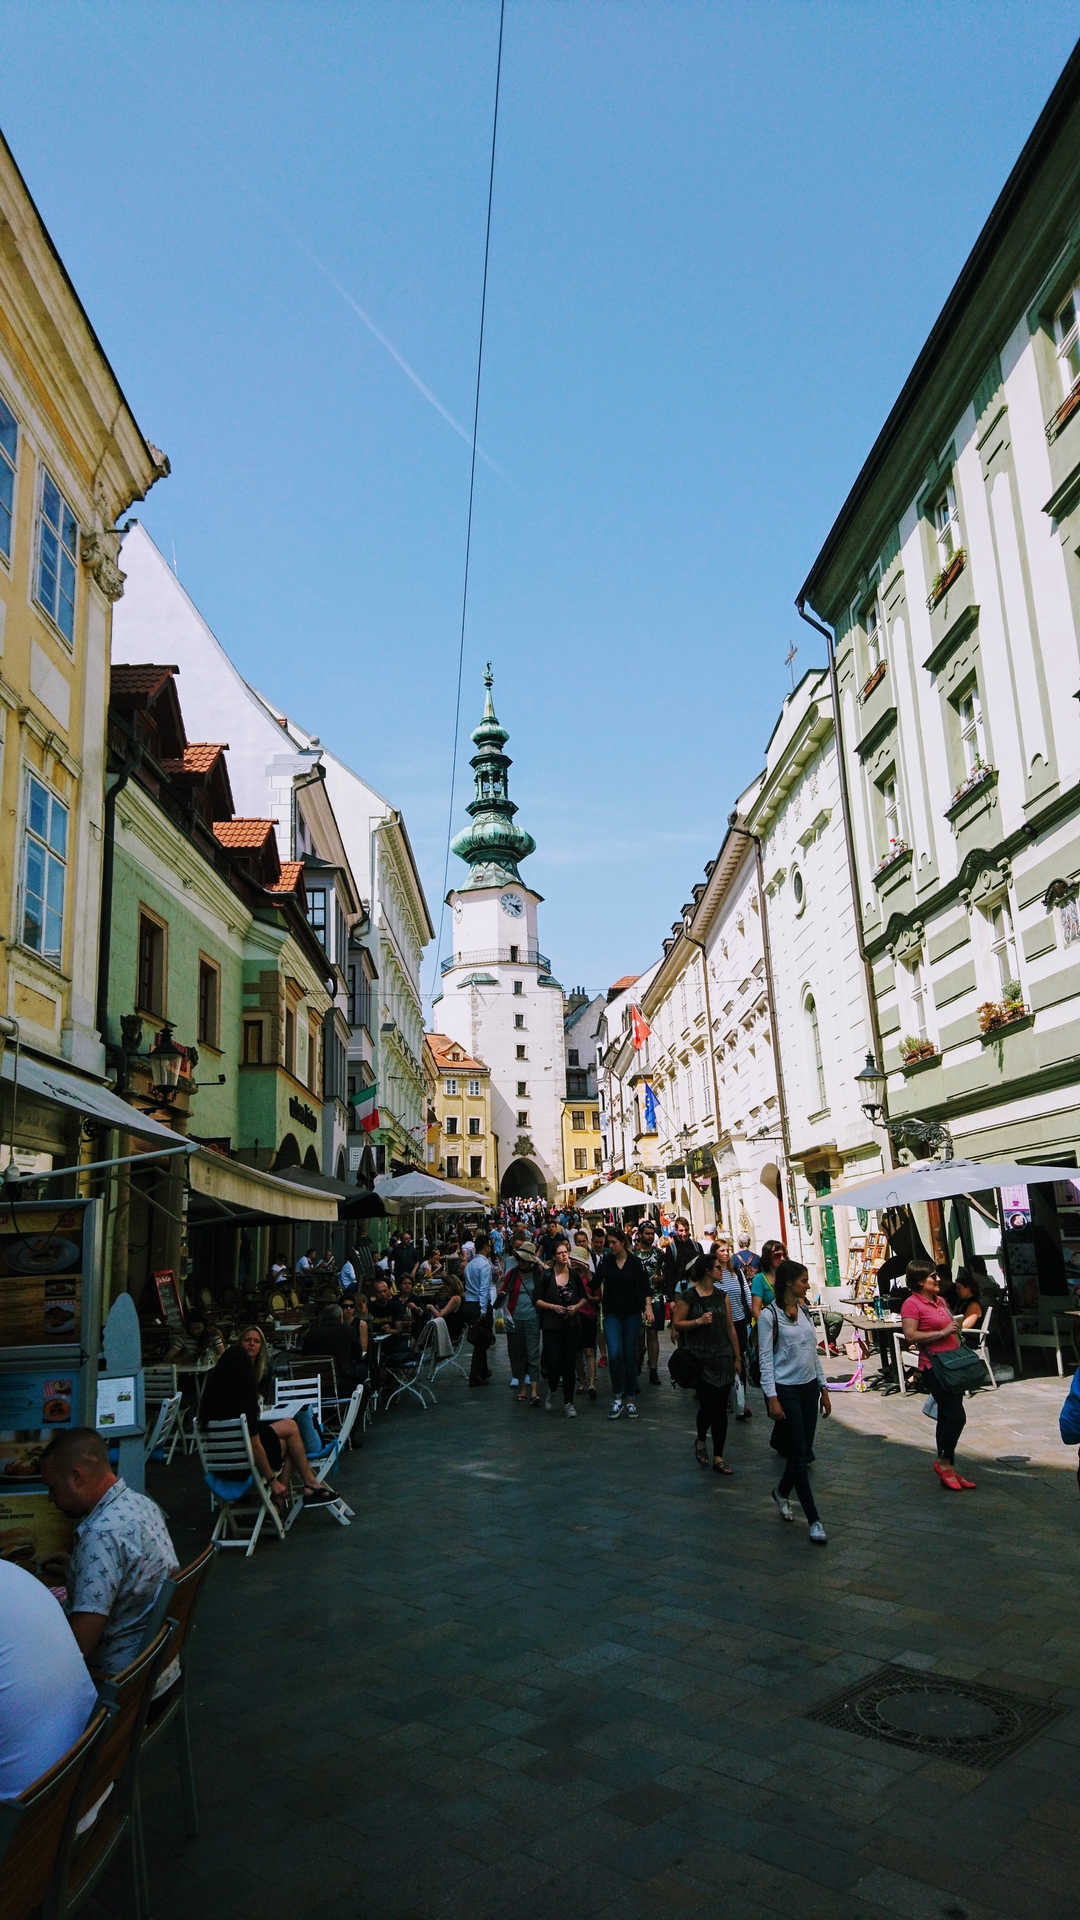 Zwiedzanie Bratysławy - zatłoczona uliczka z bramą